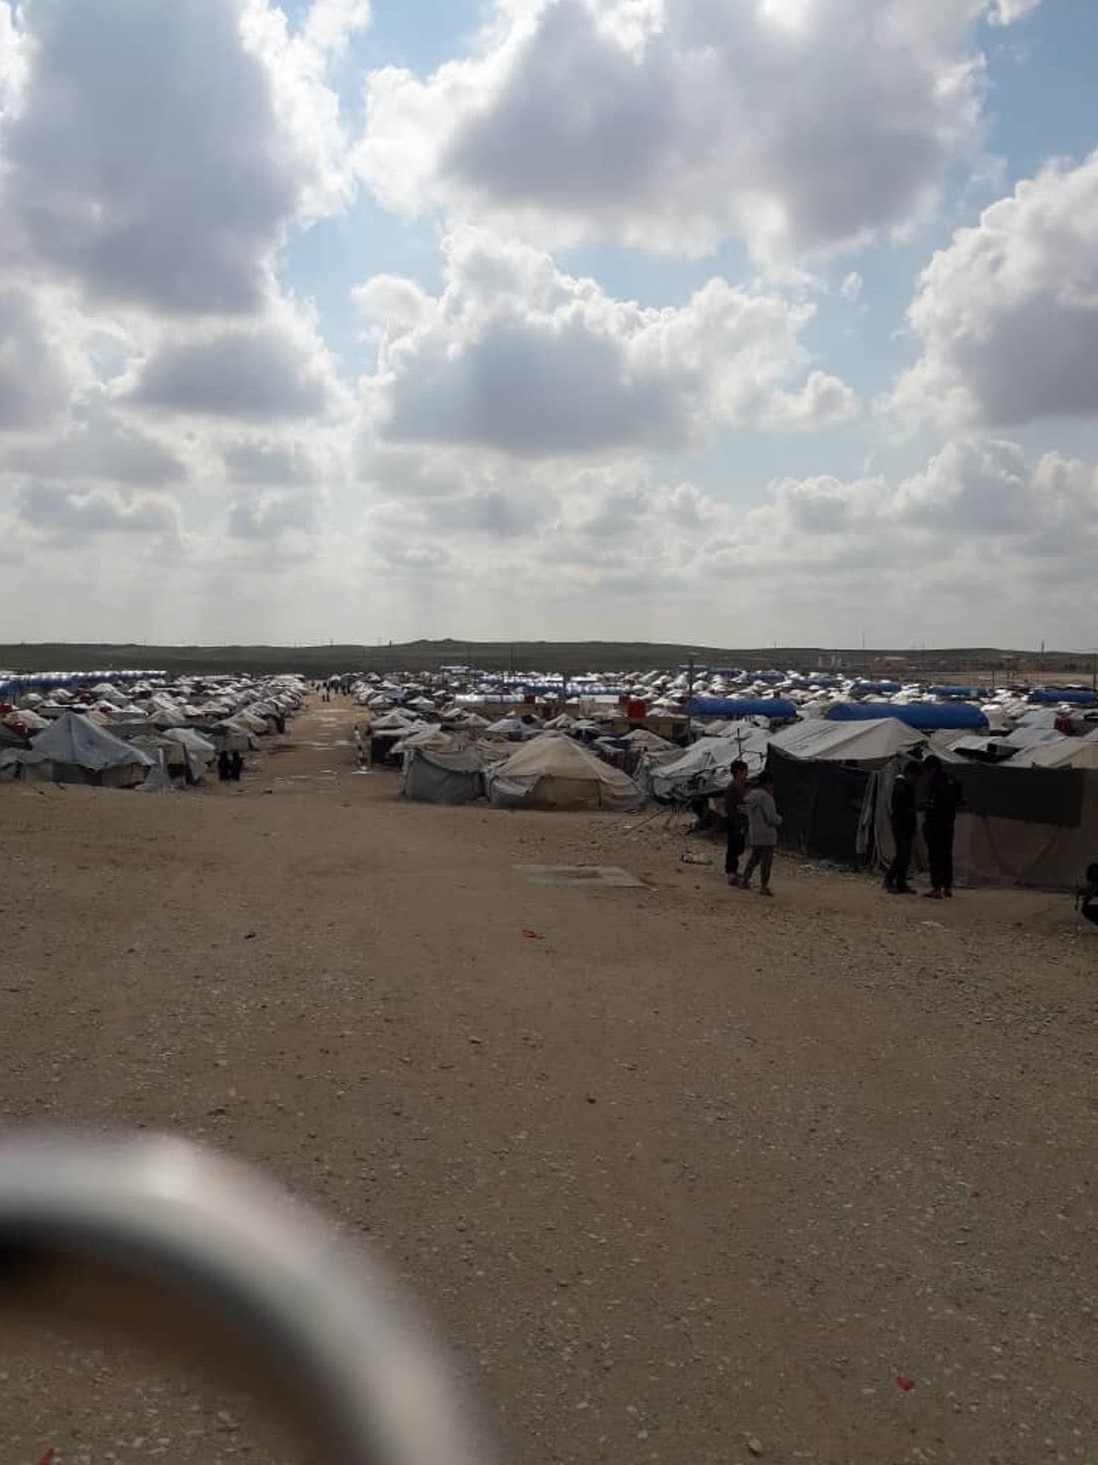 صورة تُظهر خيم النازحين في مخيم الهول الواقع قرب بلدة الهول بريف محافظة الحسكة الشرقي، في 25 كانون الثاني 2019 2.jpg